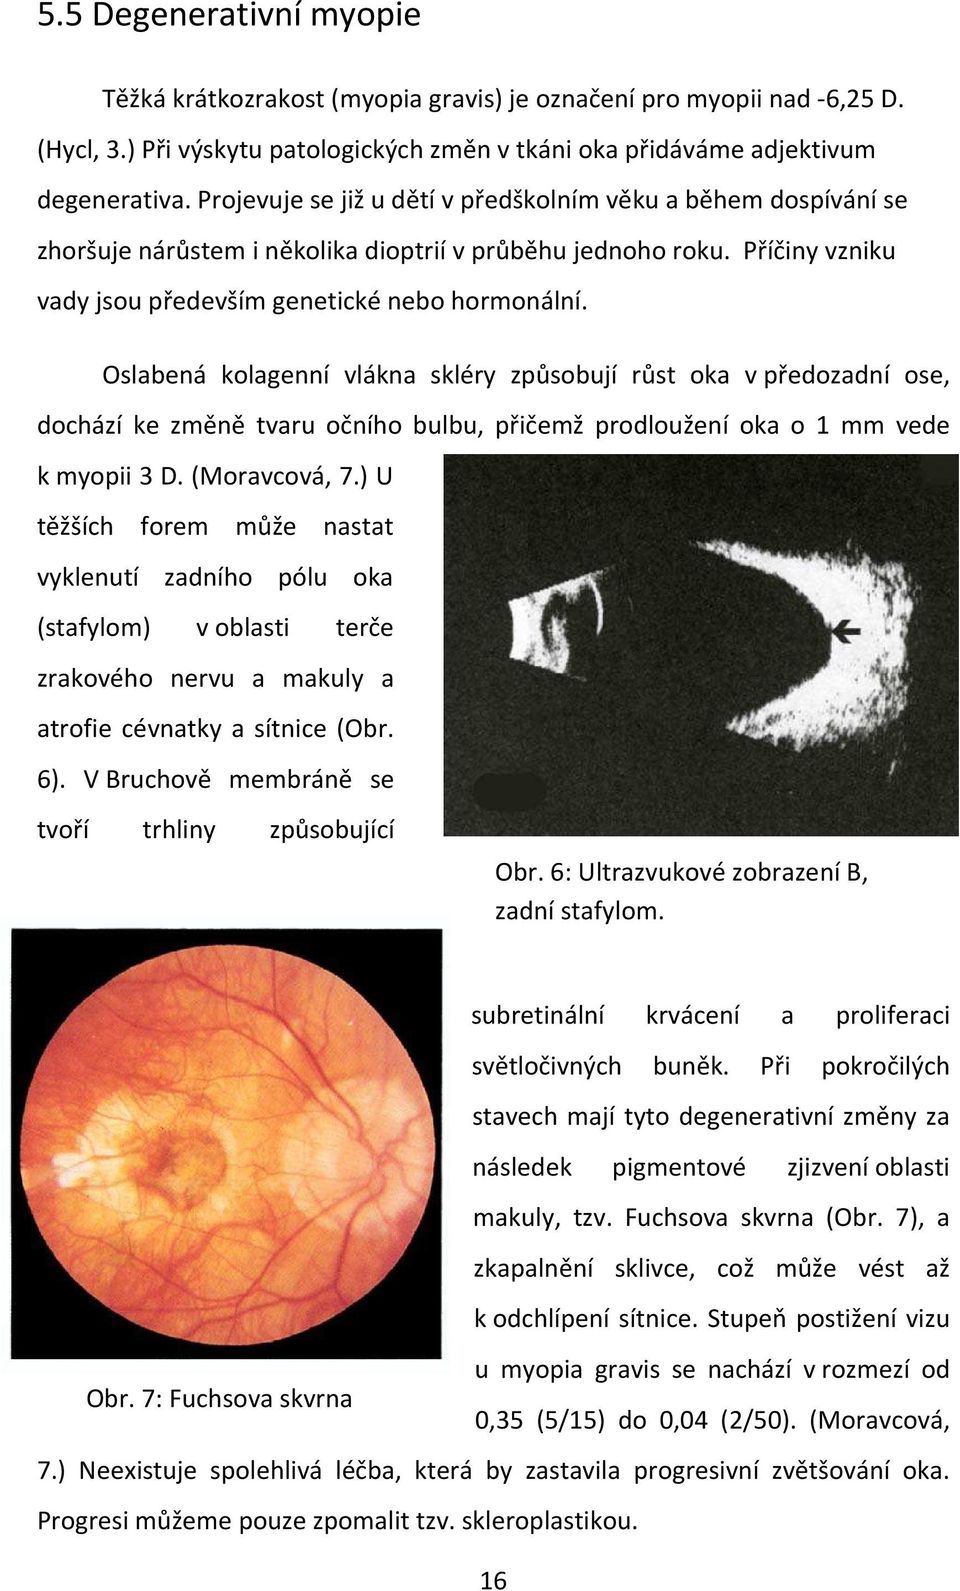 Oslabená kolagenní vlákna skléry způsobují růst oka v předozadní ose, dochází ke změně tvaru očního bulbu, přičemž prodloužení oka o 1 mm vede k myopii 3 D. (Moravcová, 7.